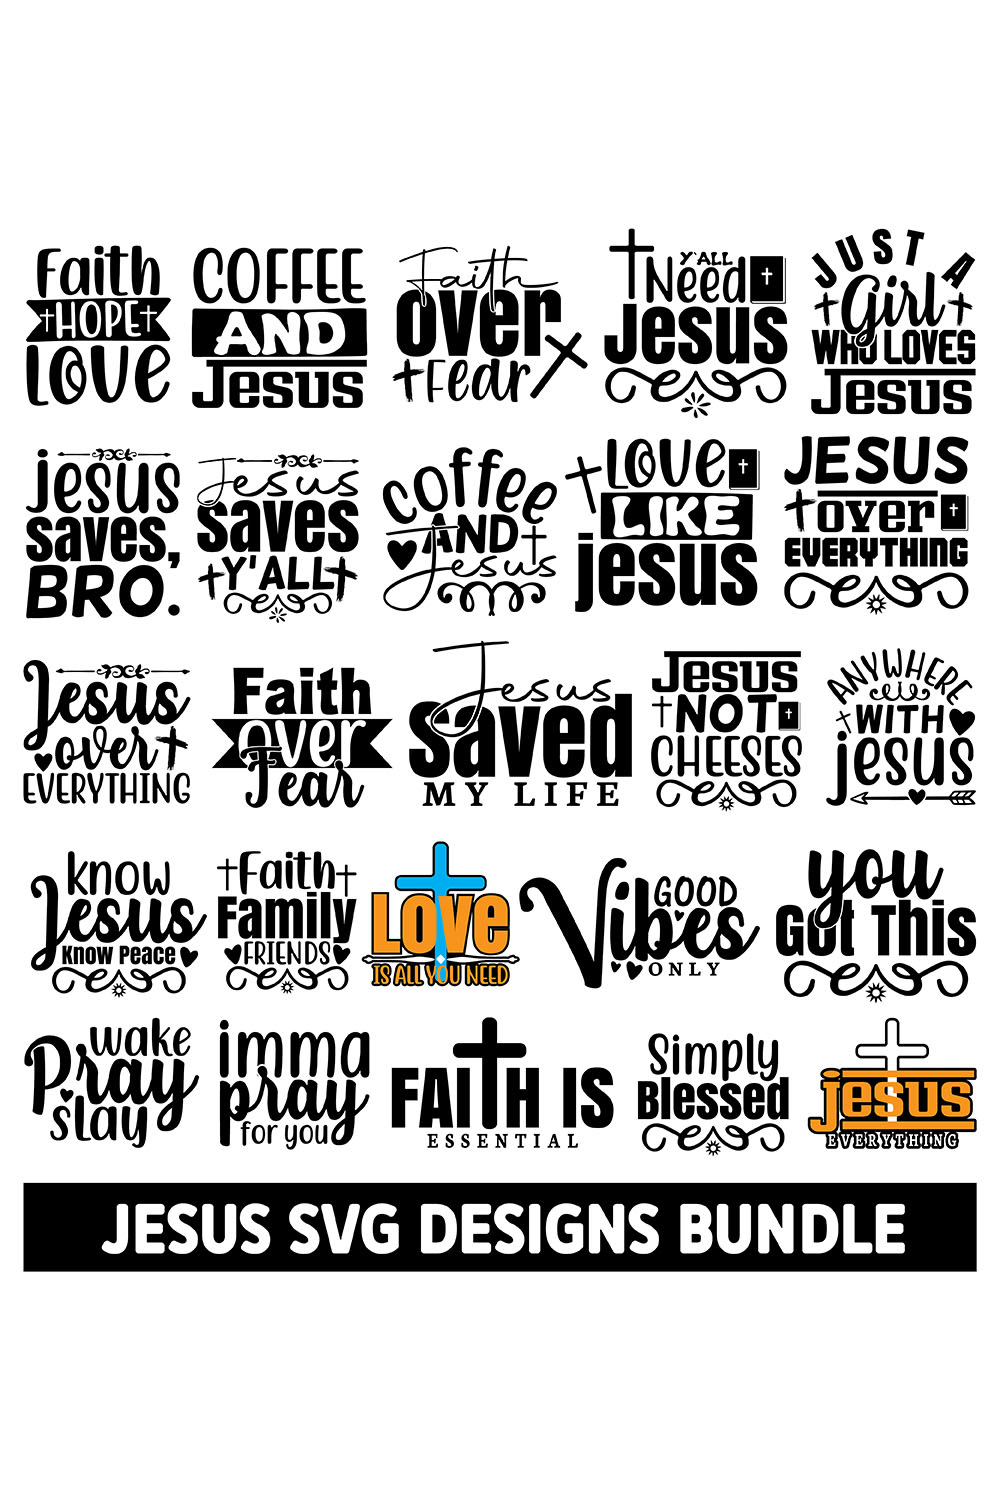 Jesus SVG Designs Bundle pinterest image.